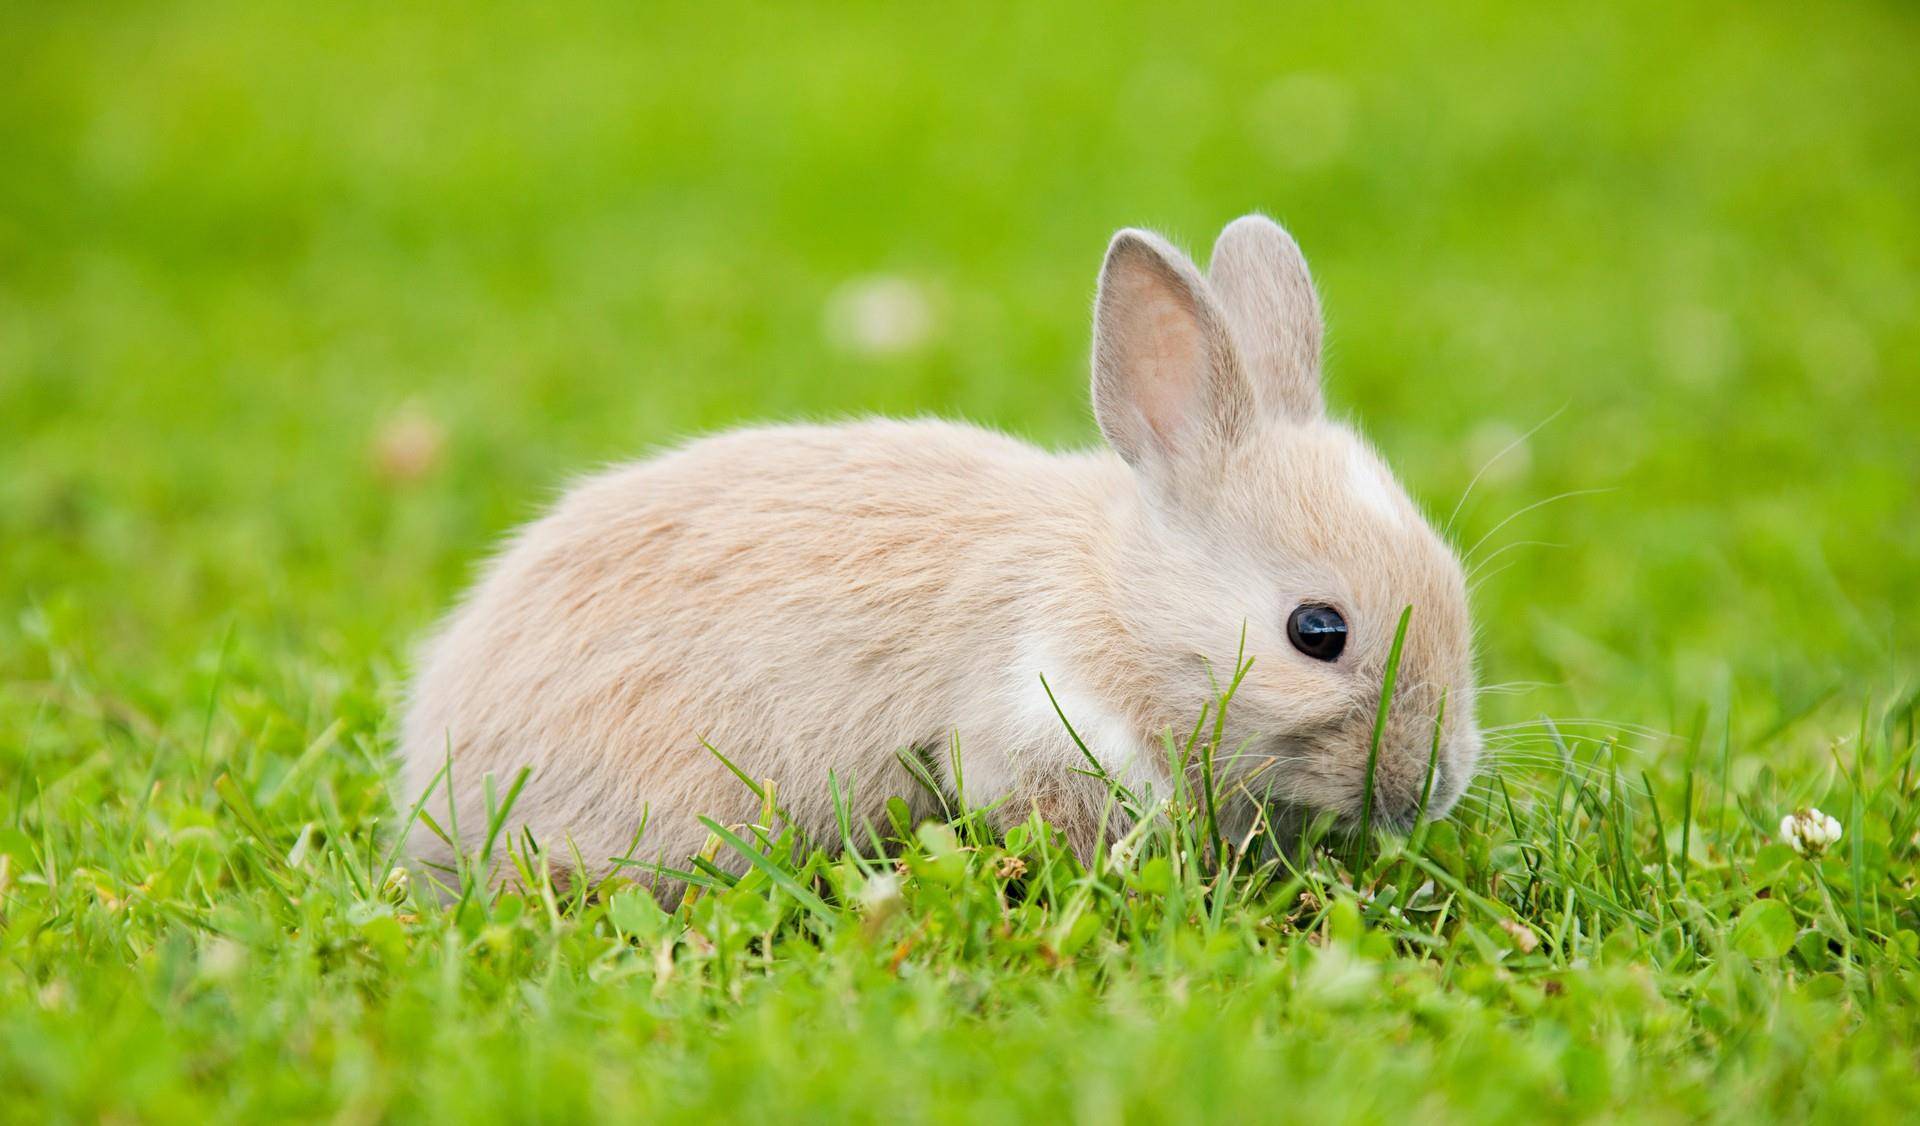 兔子摄影 草地上的兔兔有多可爱,萌化了